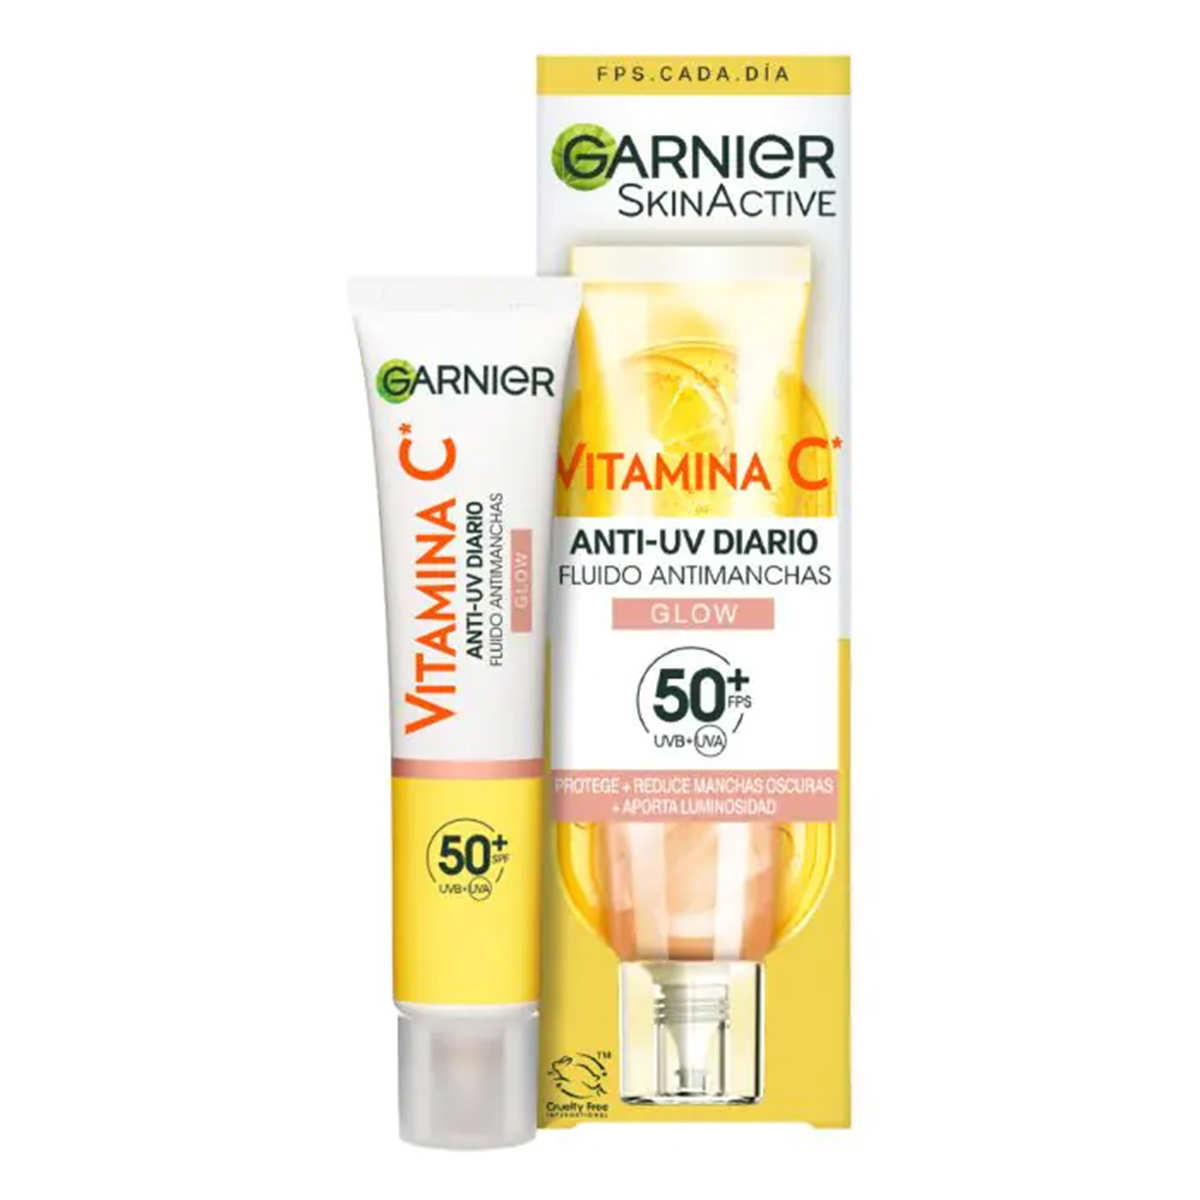 Vitamina C Fluido Antimanchas Anti UV Diario Efecto Glow FPS50+ de Garnier 111,58 euros copia